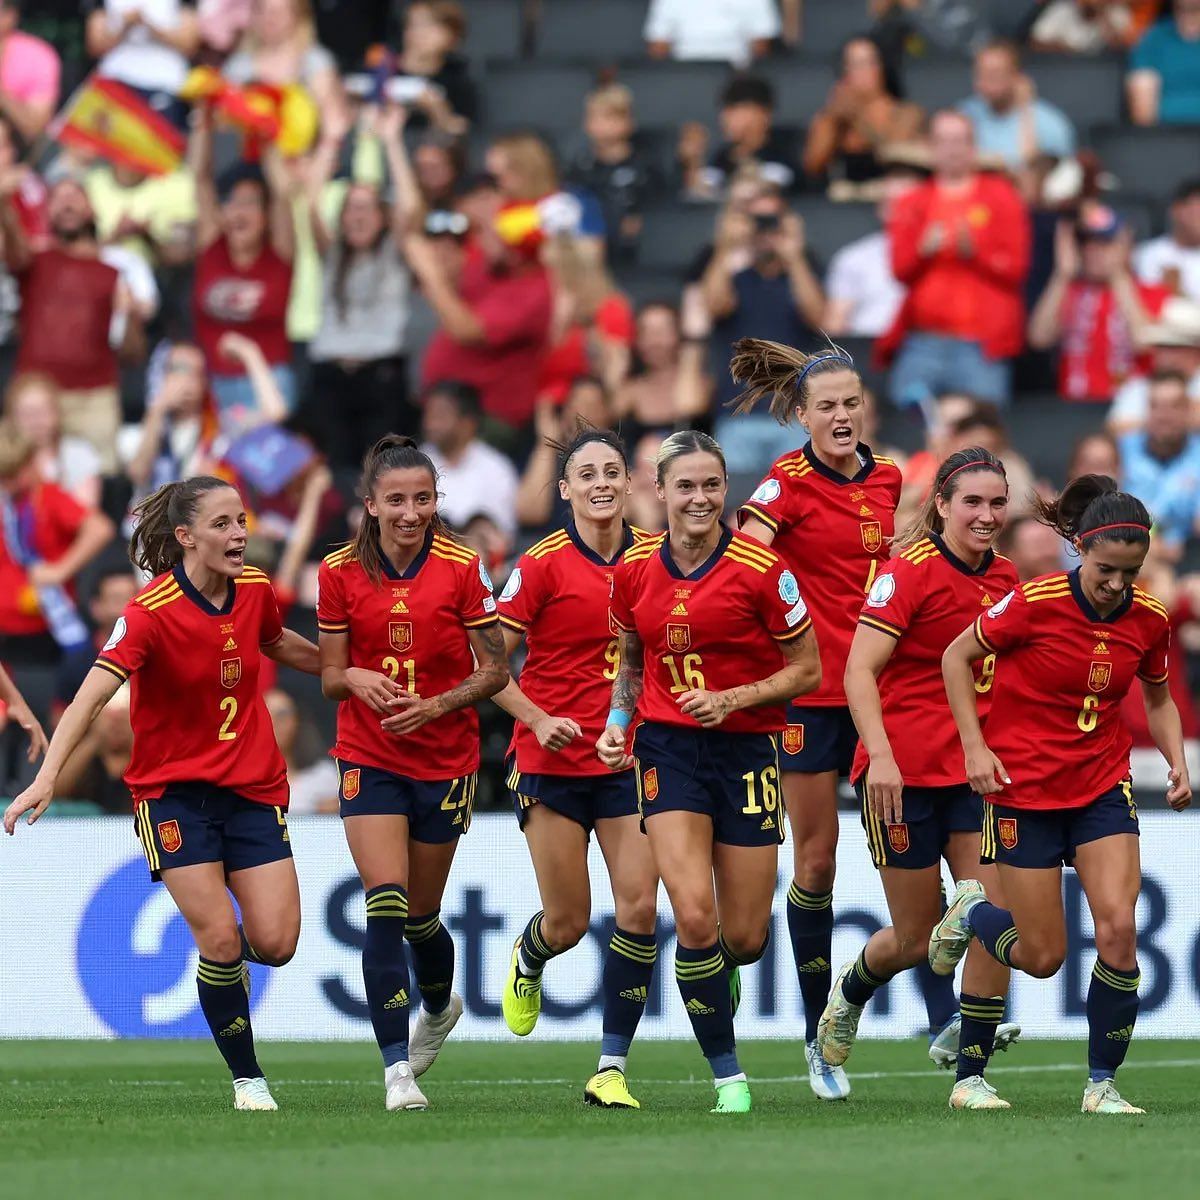 स्पेनिश टीम की 15 महिला फुटबॉल खिलाड़ियों ने इस्तीफा दे दिया है।